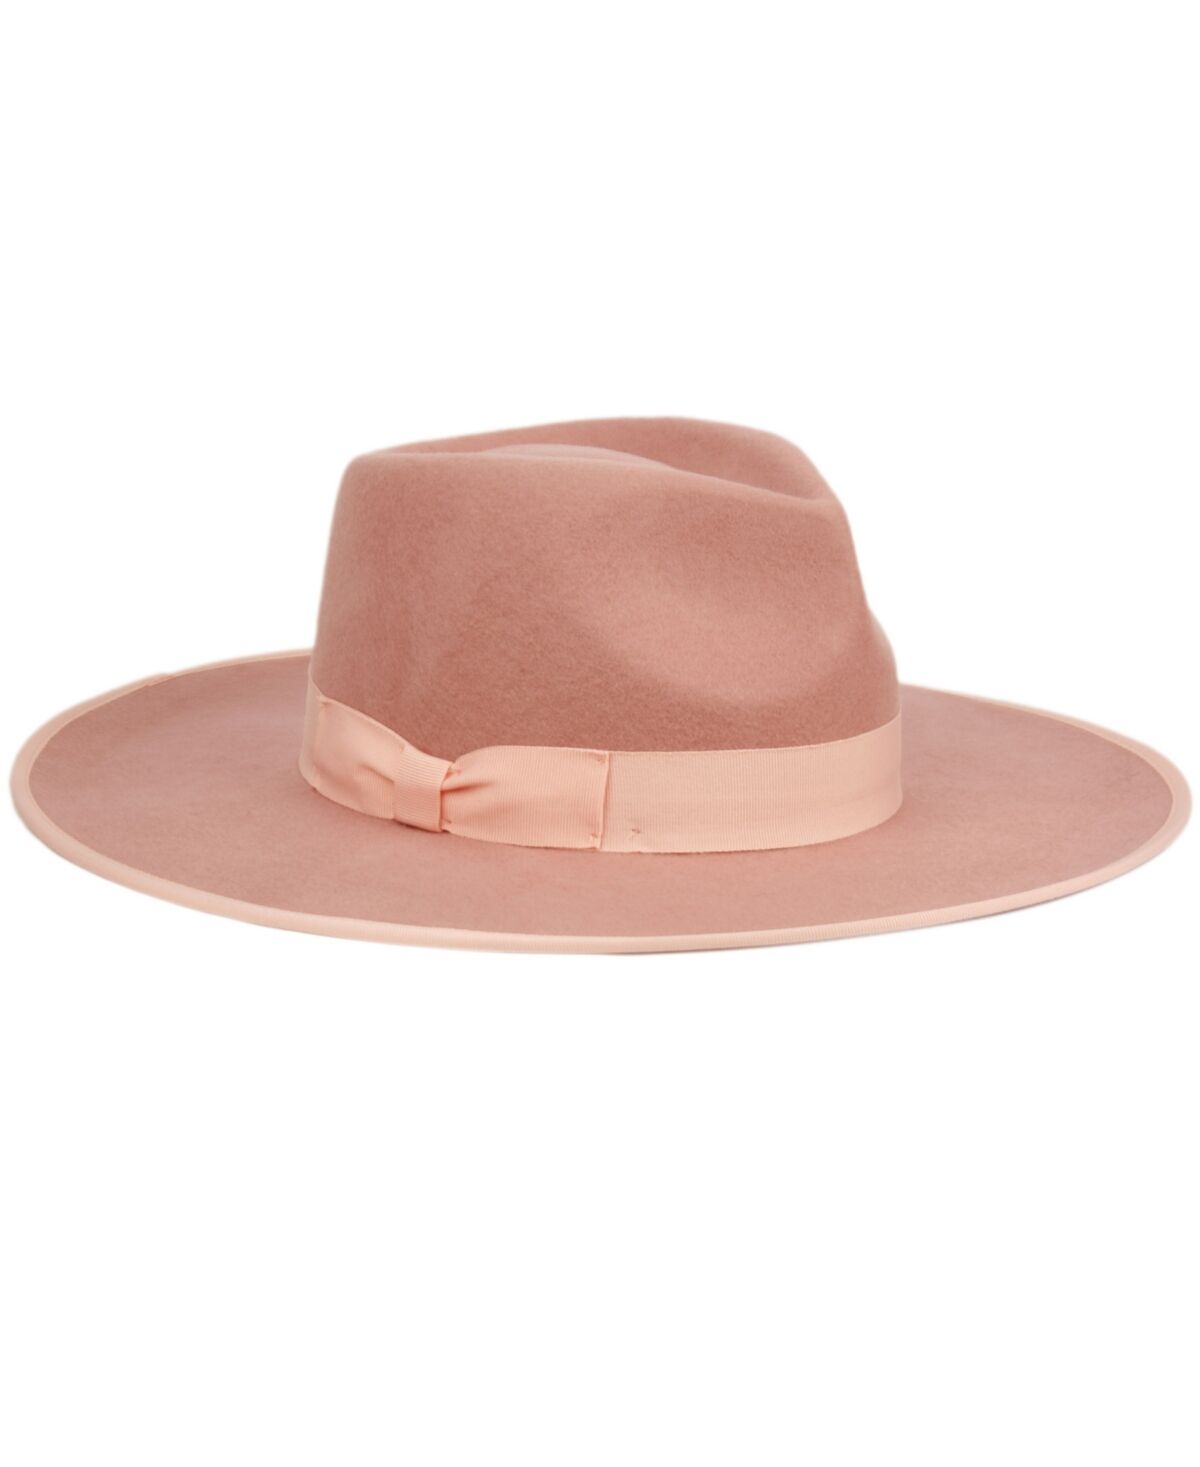 Angela & William Women's Wide Brim Felt Rancher Fedora Hat - Indi Pink